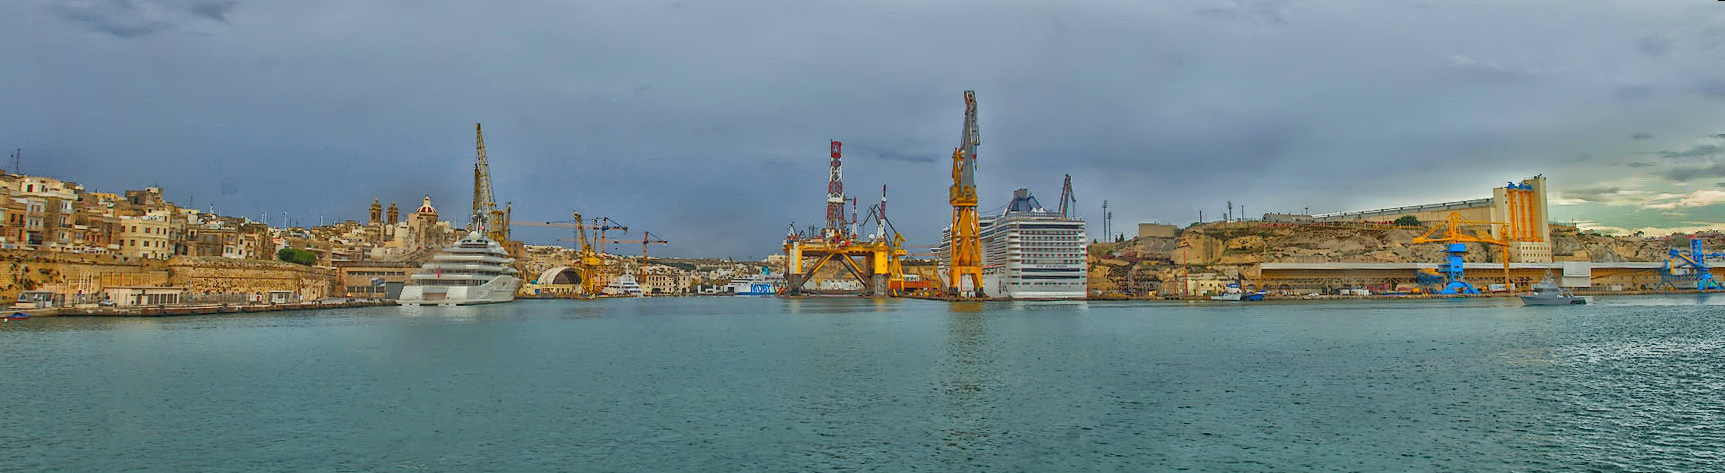 Hafenrundfahrt in Malta